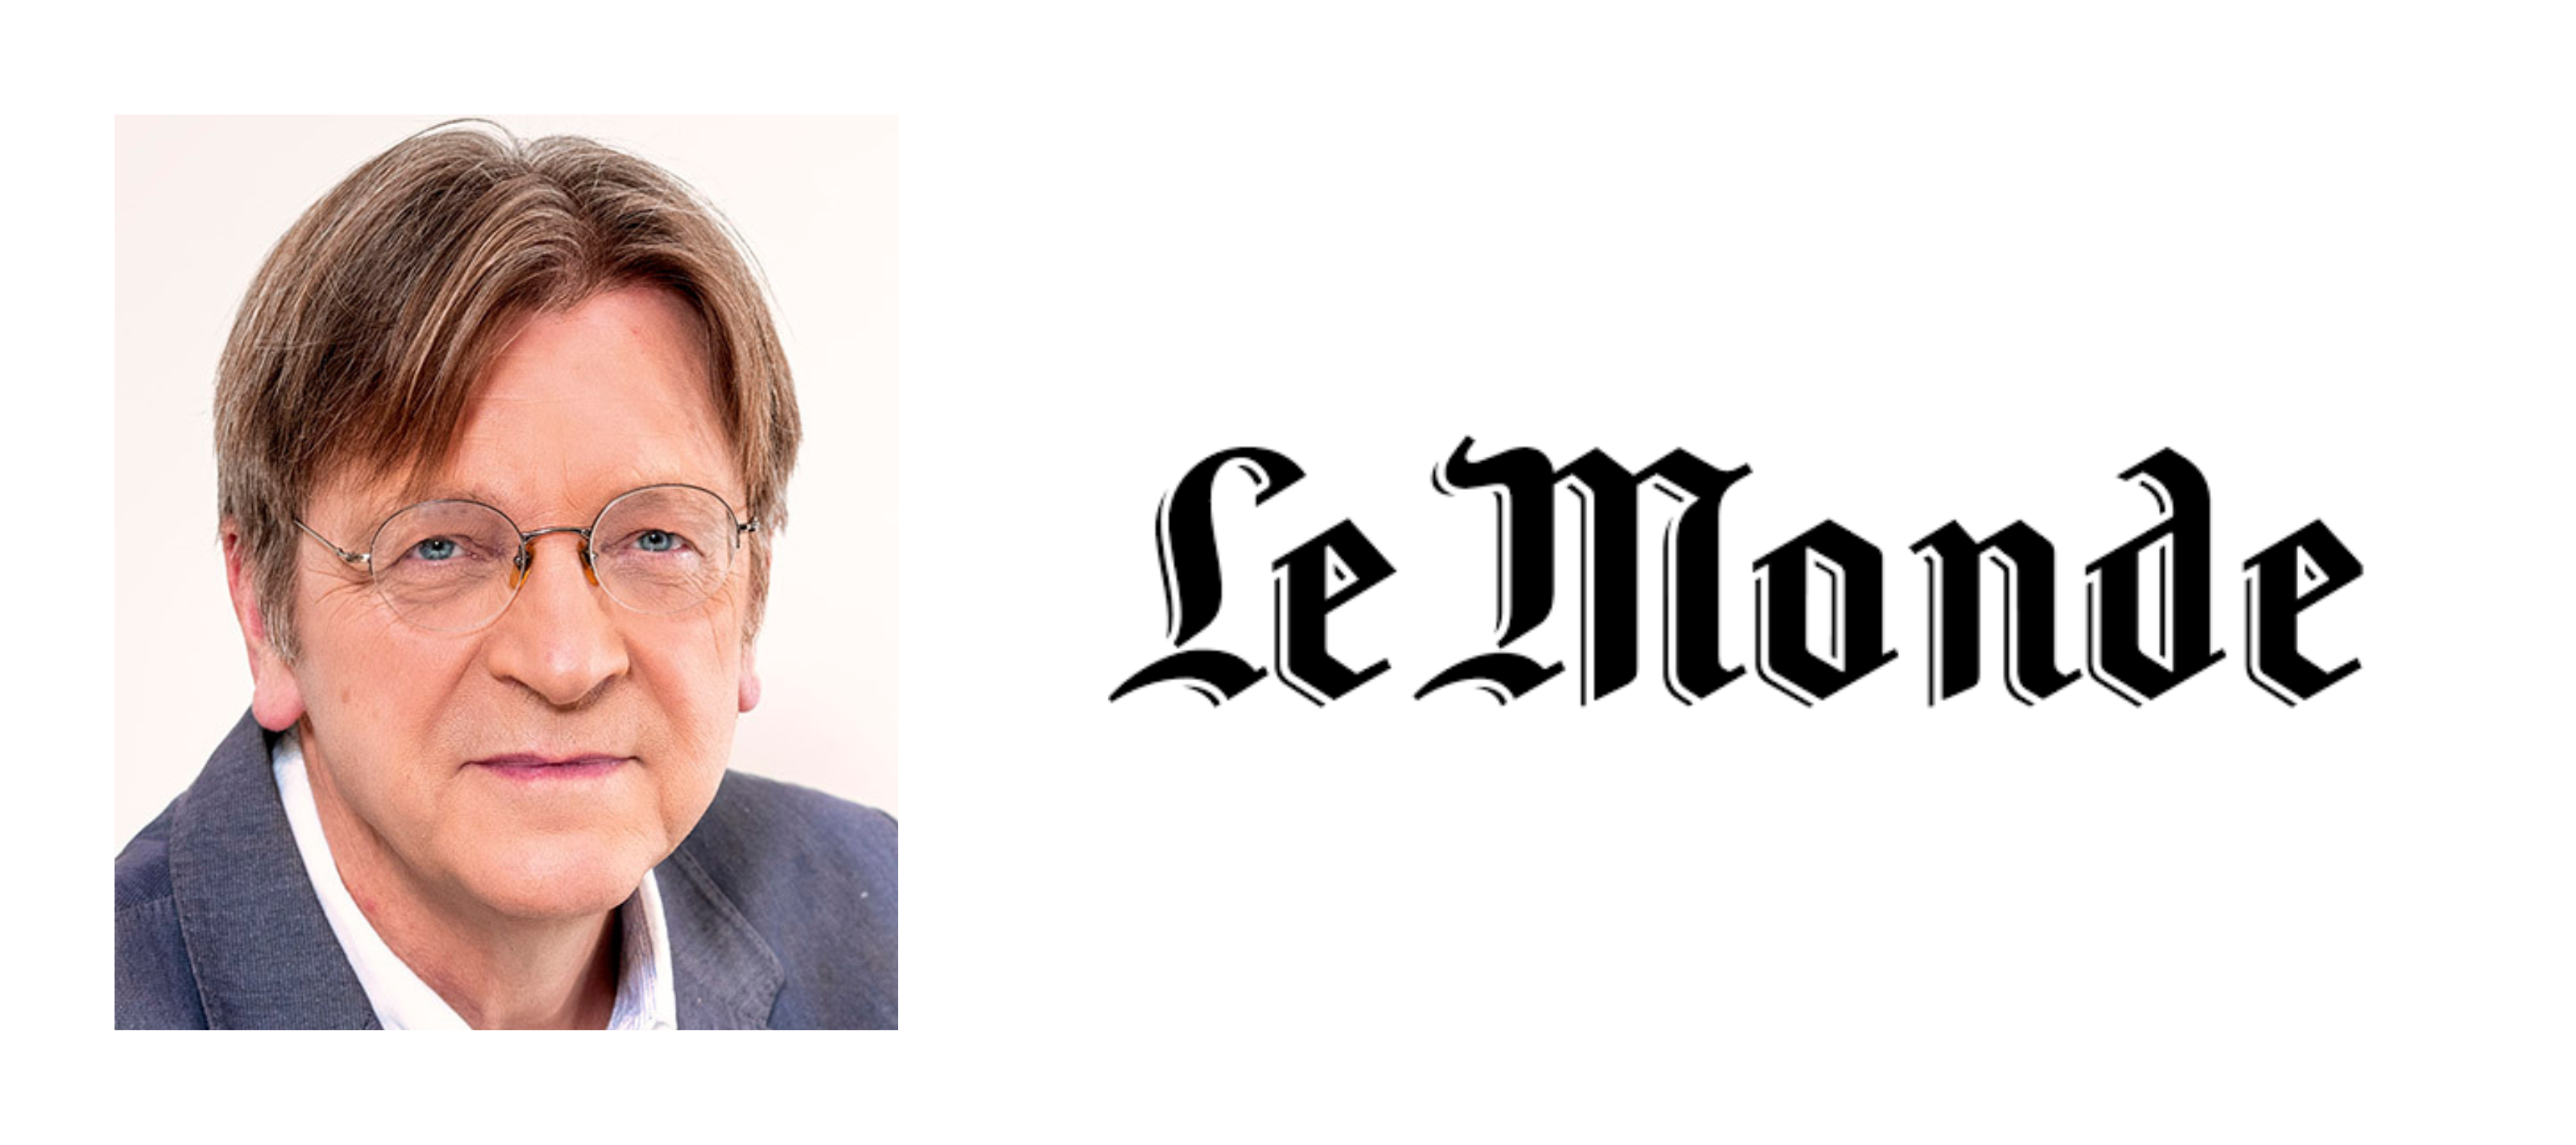 Guy Verhofstadt dans Le Monde